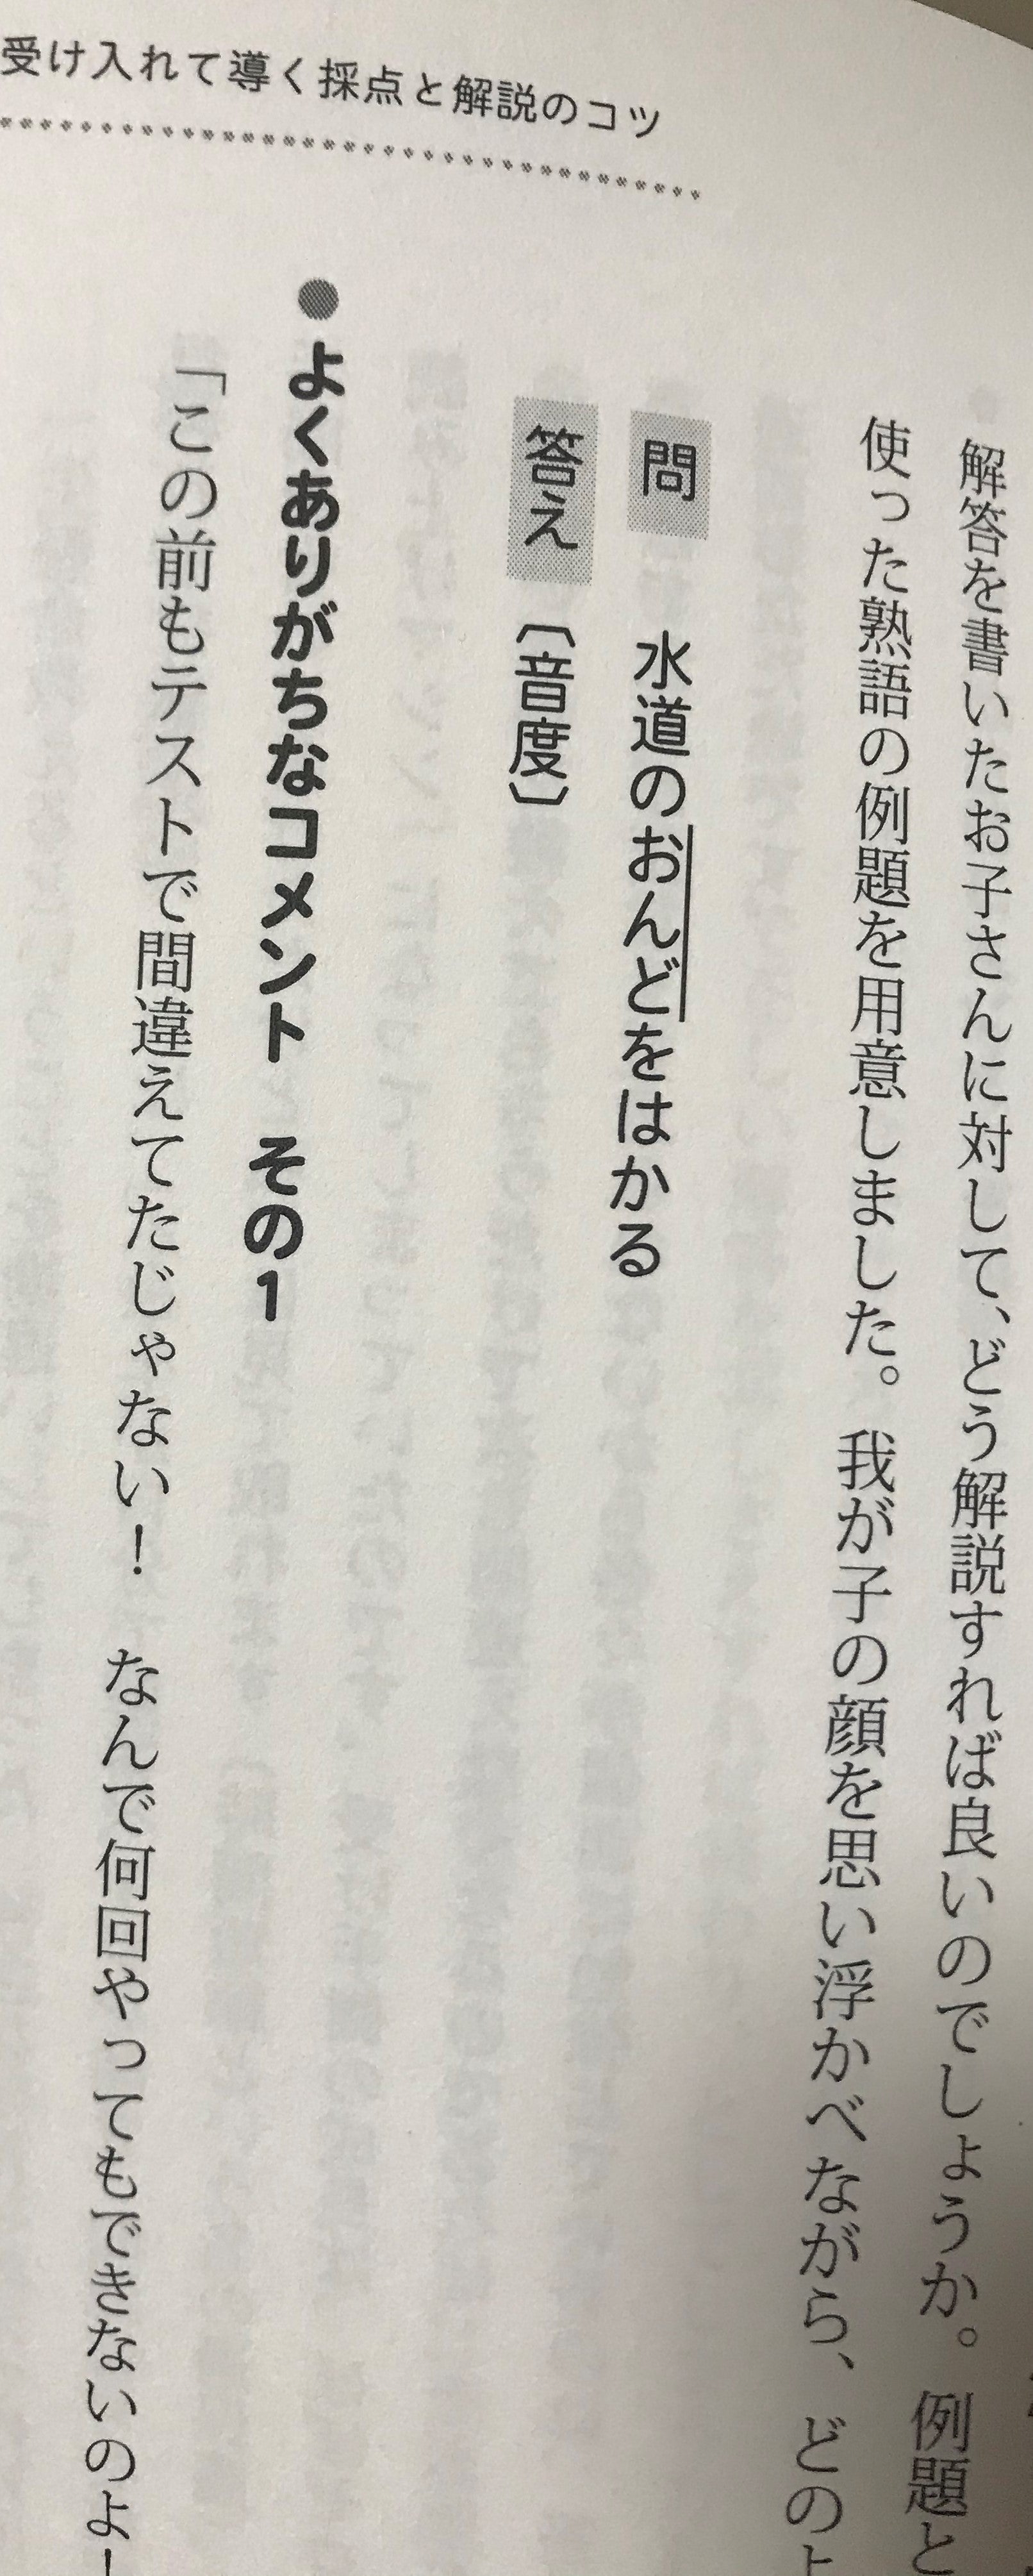 光村図書 5年3学期に習う漢字一覧 家庭教師もりぐちの授業日誌